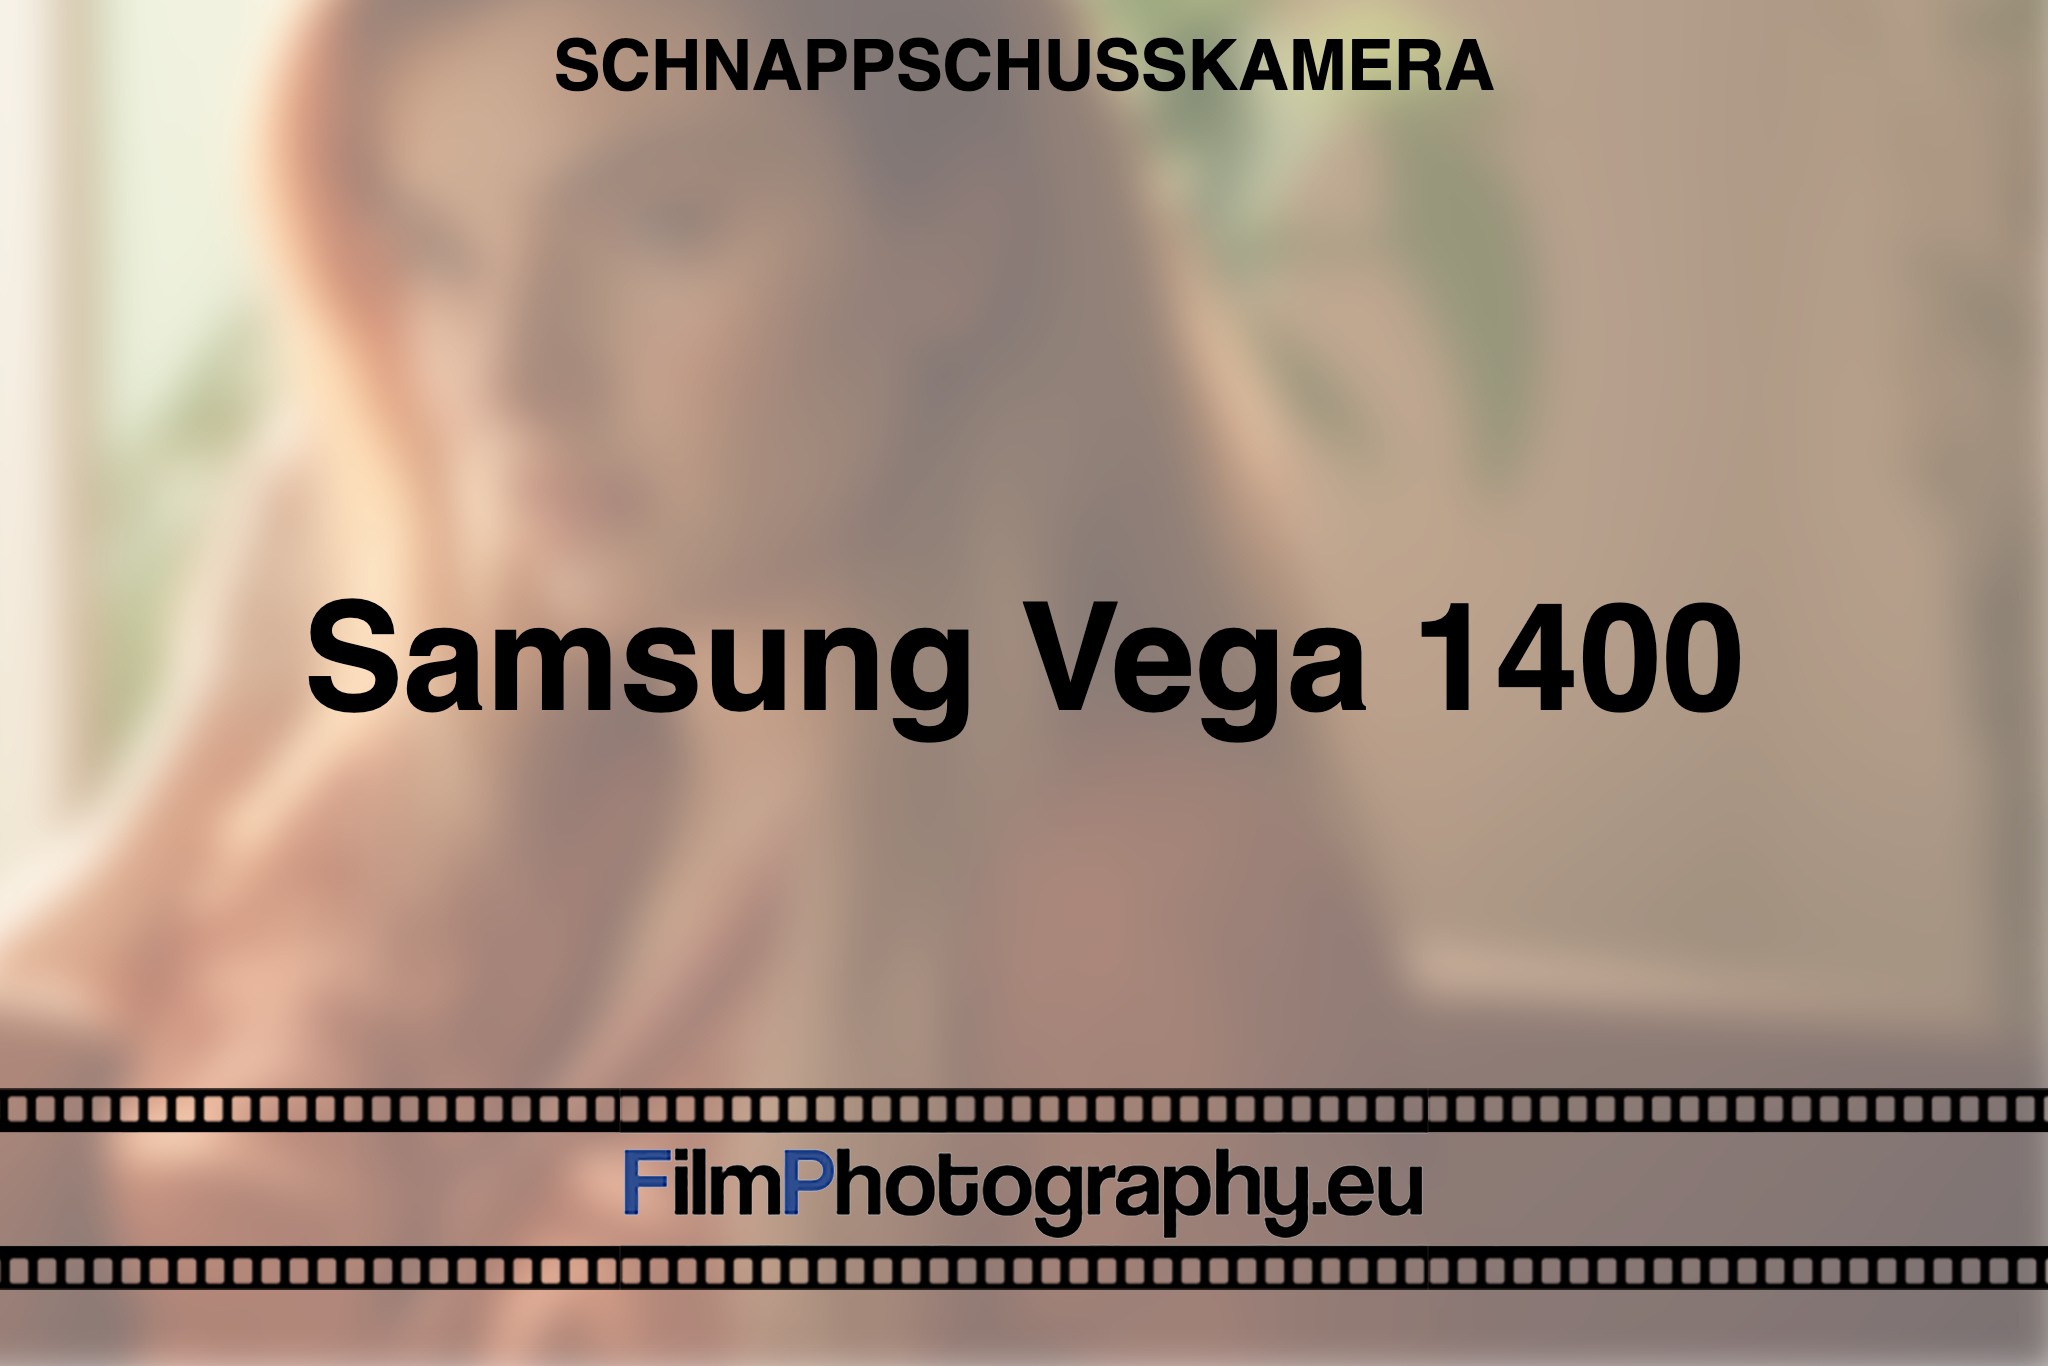 samsung-vega-1400-schnappschusskamera-bnv